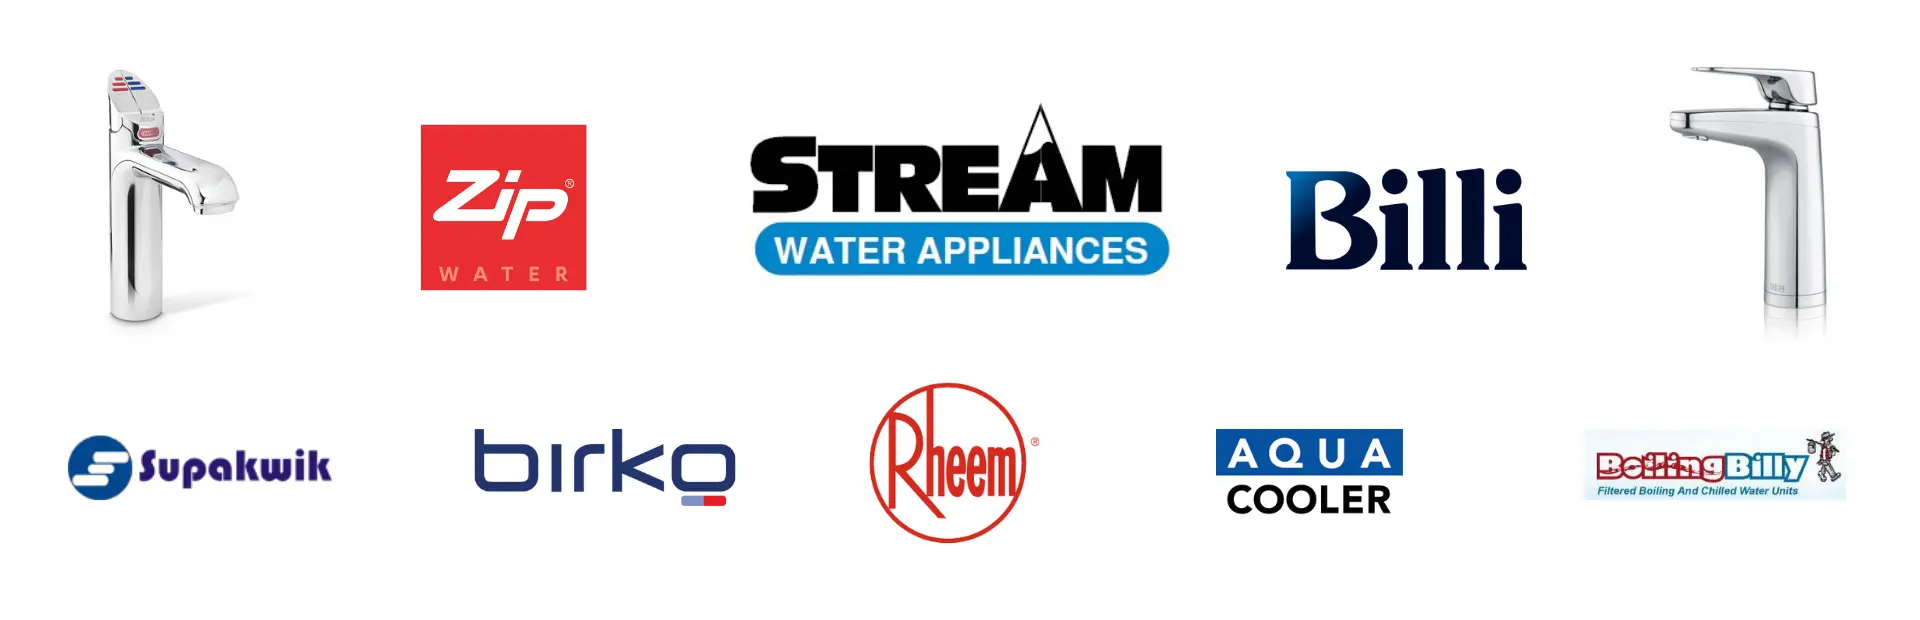 Aqua-Tech water appliance brands